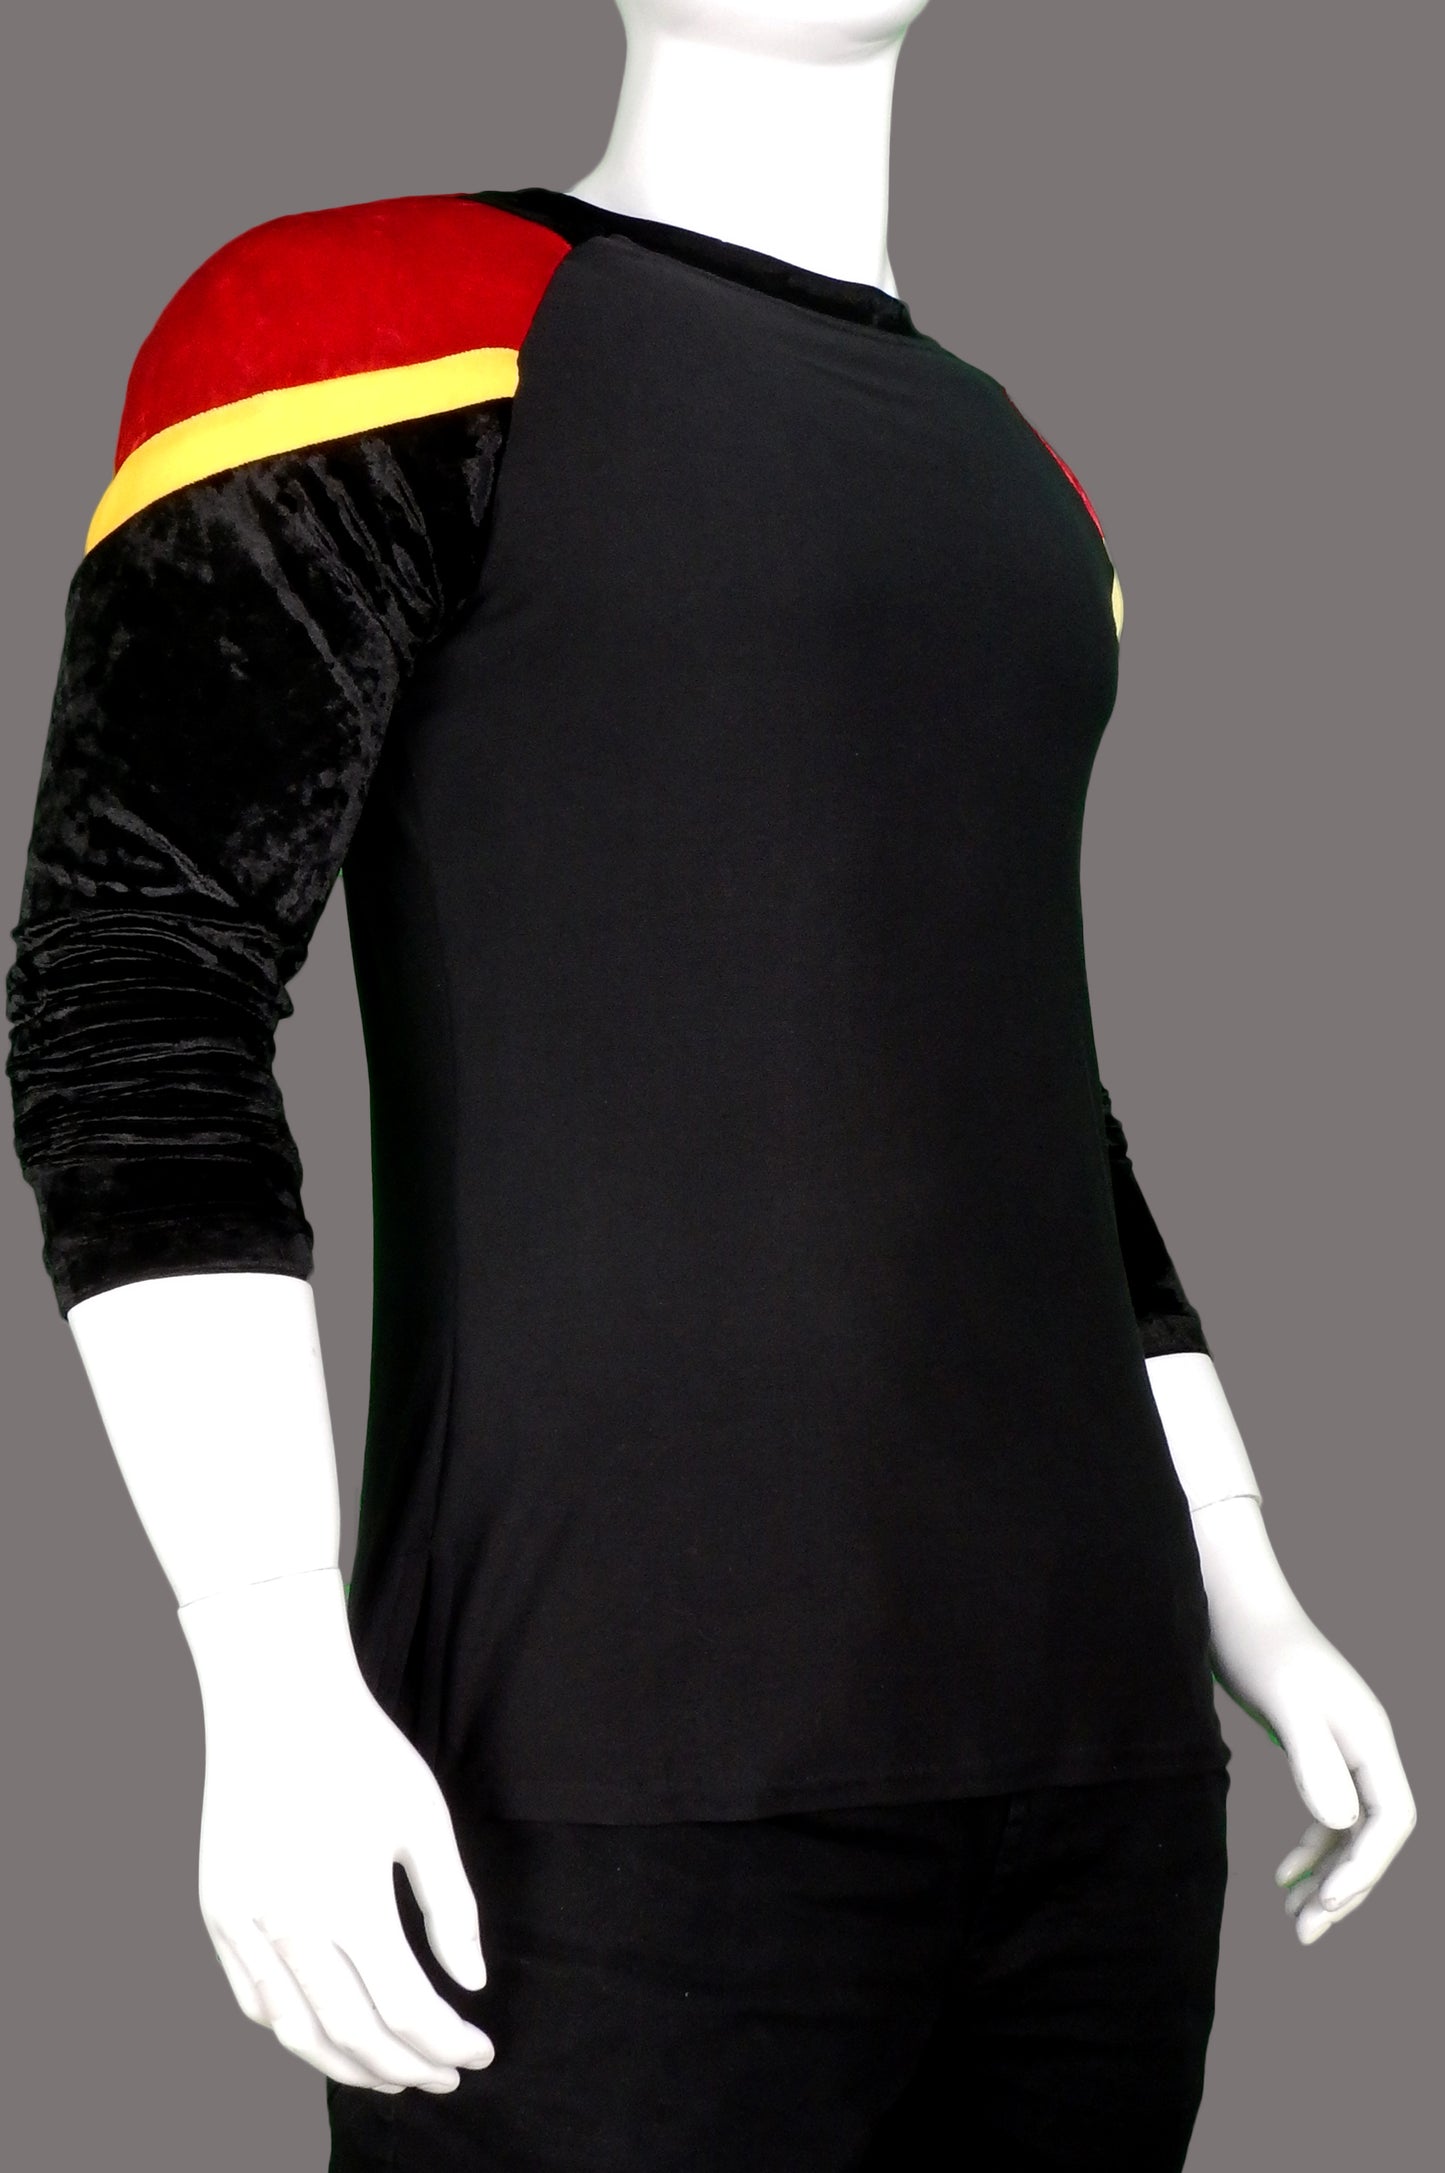 Red-Winged Black Bird Raglan Shirt